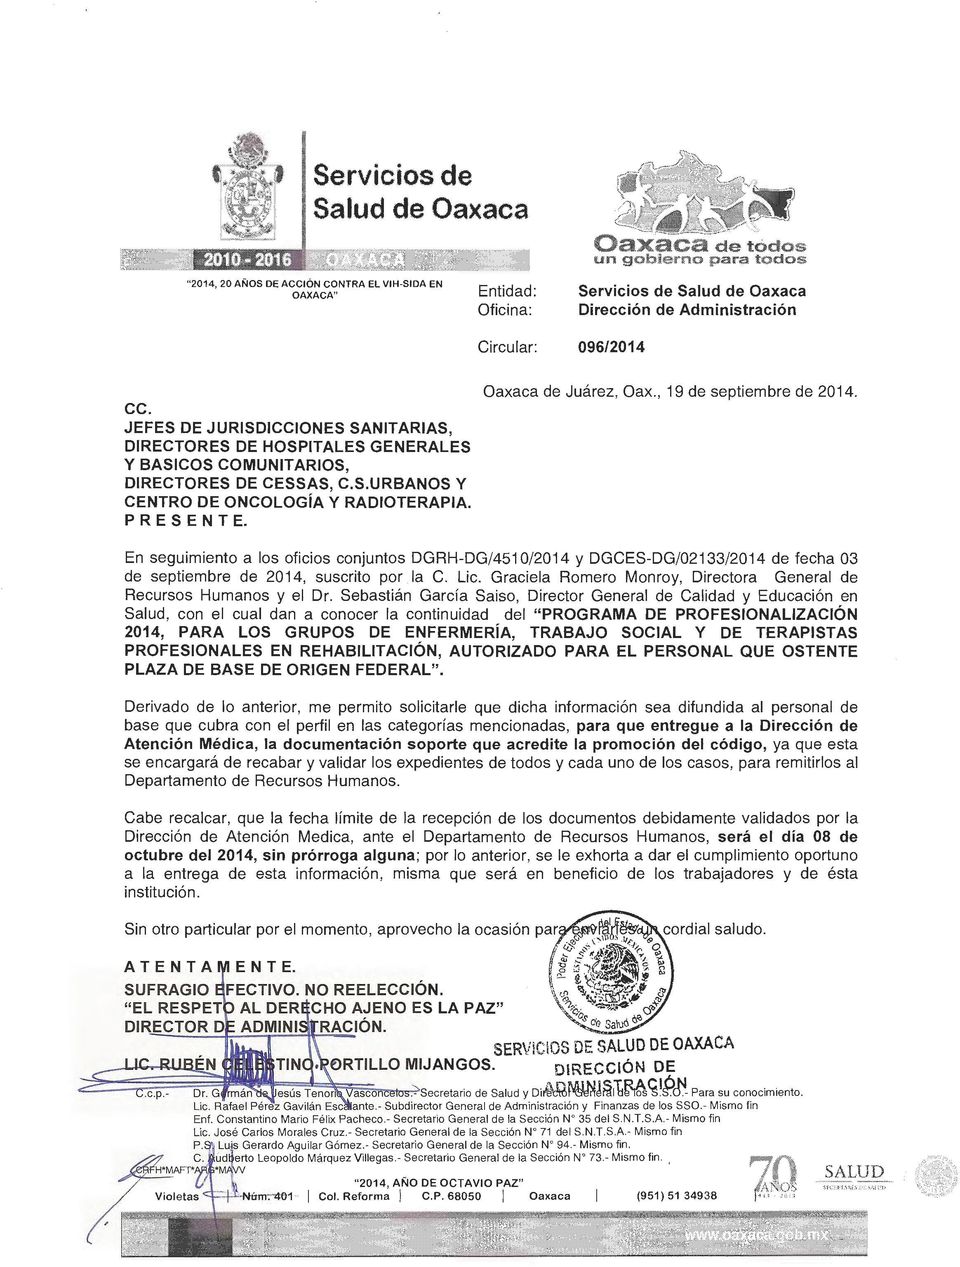 PRESENTE. Oaxaca de Juárez, Oax., 19 de septiembre de 2014. En seguimiento a los oficios conjuntos DGRH-DG/4510/2014 y DGCES-DG/02133/2014 de fecha 03 de septiembre de 2014, suscrito por. la C. Lic.